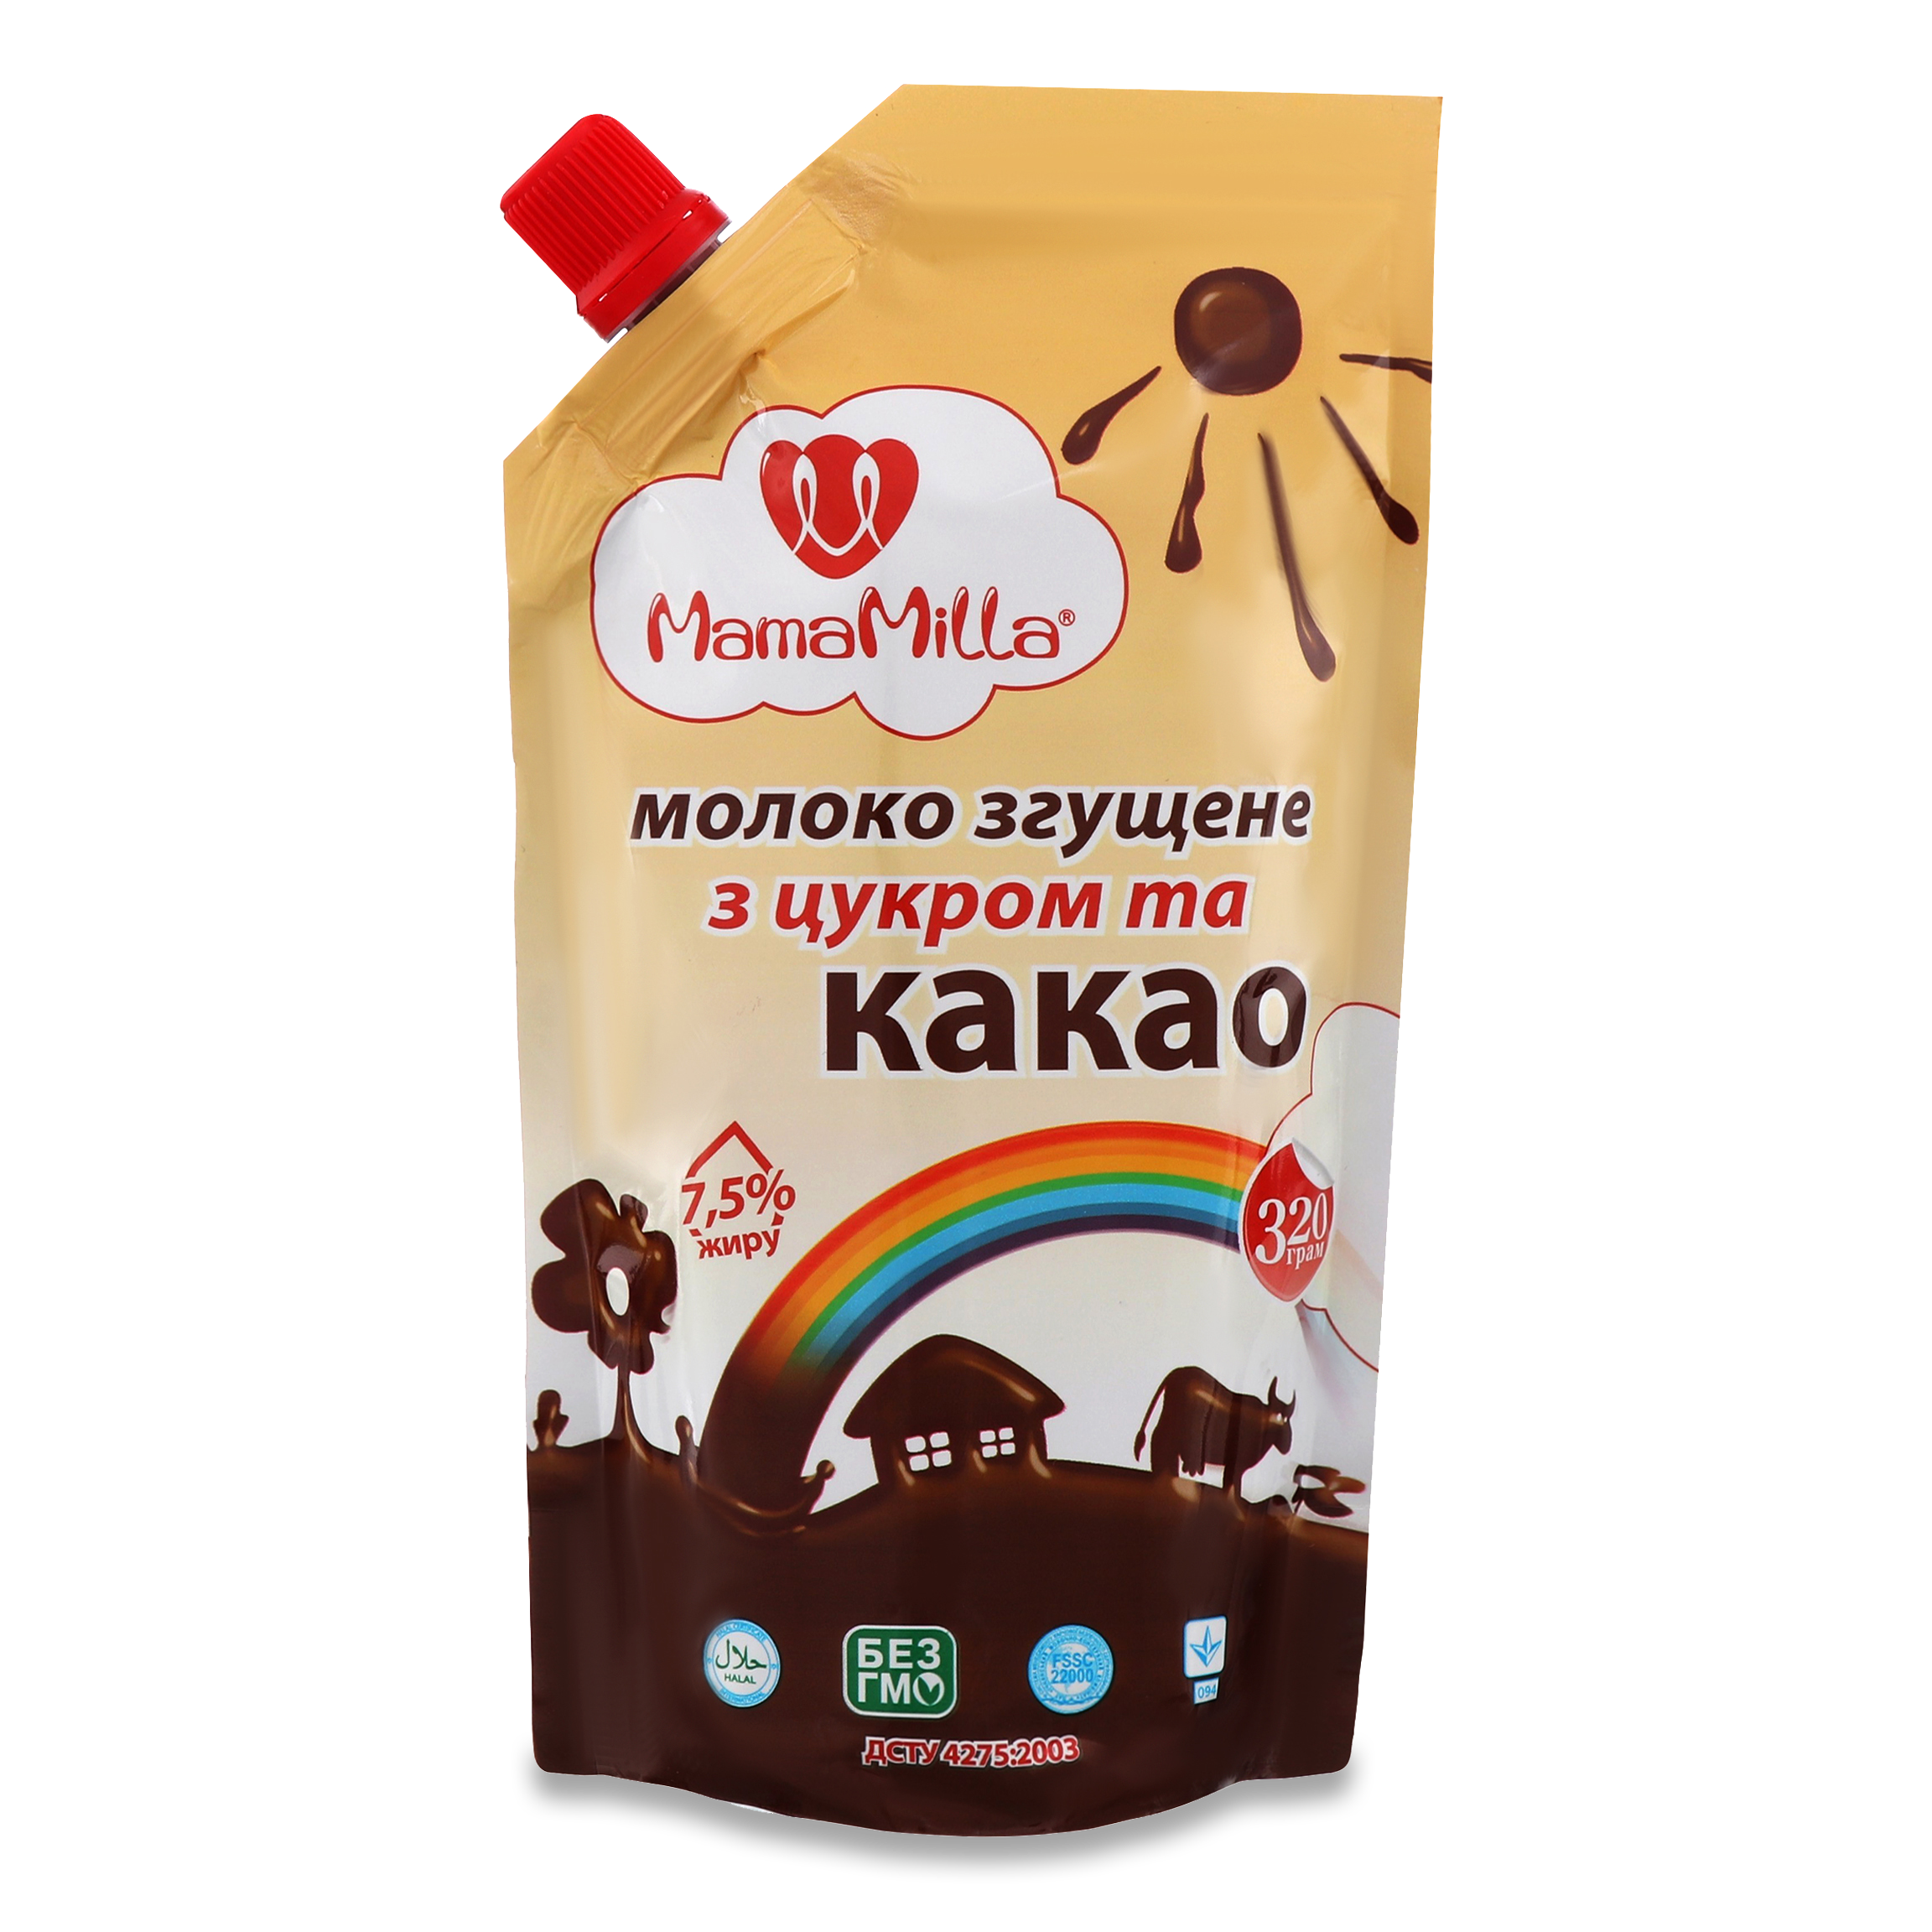 Молоко сгущенное MamaMilla с сахаром и какао 7,5% 320г дой-пак
